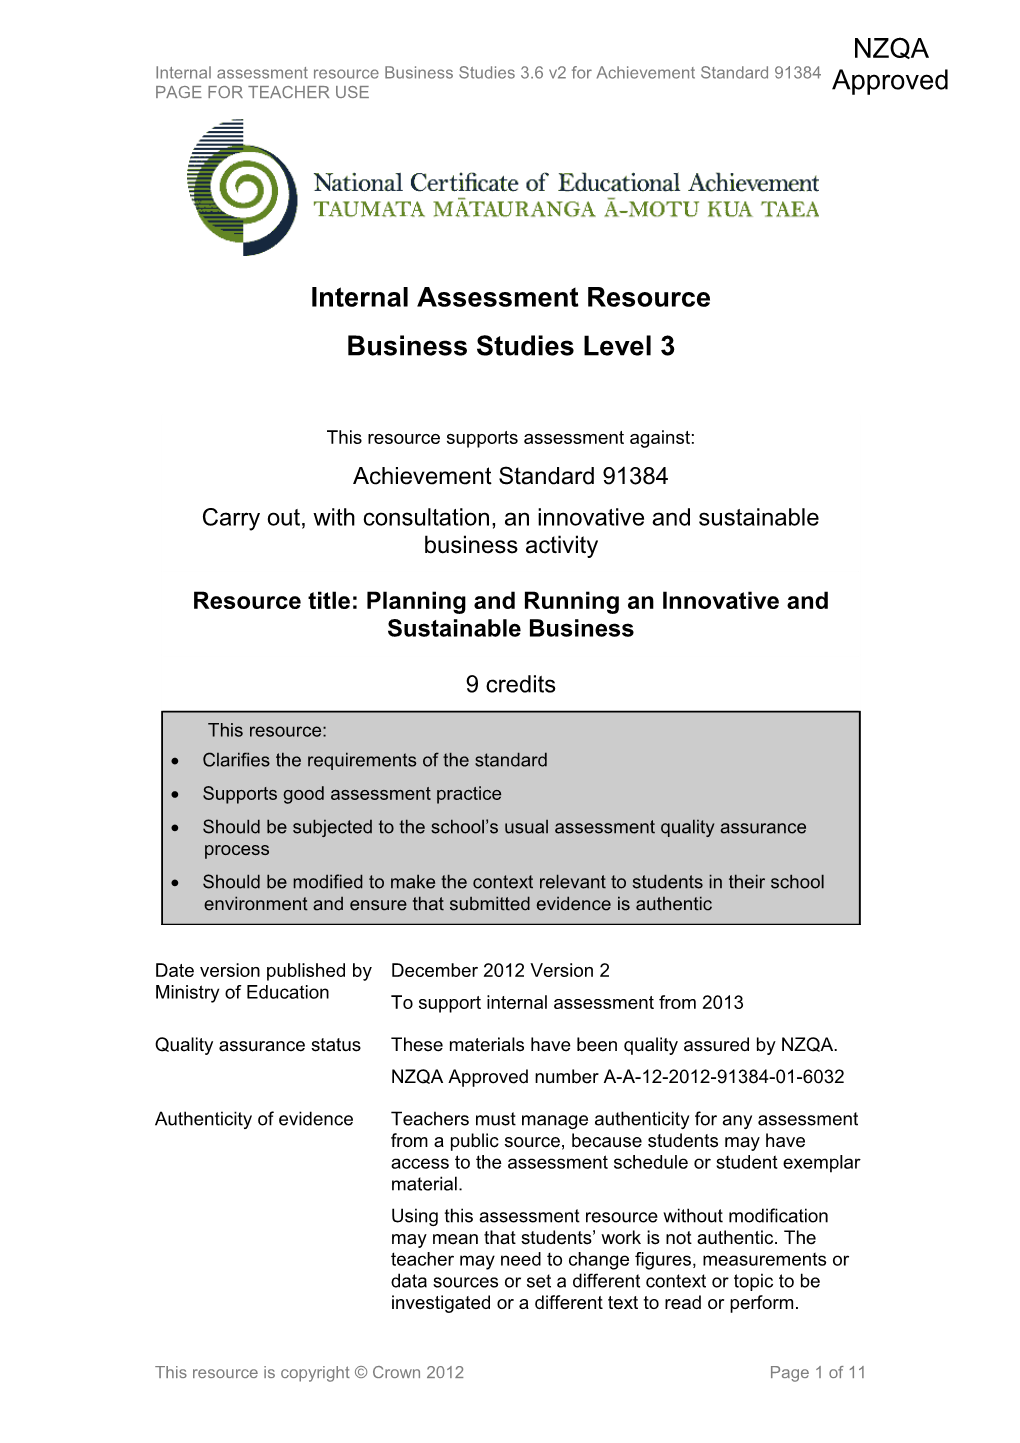 Level 3 Business Studies Internal Assessment Resource